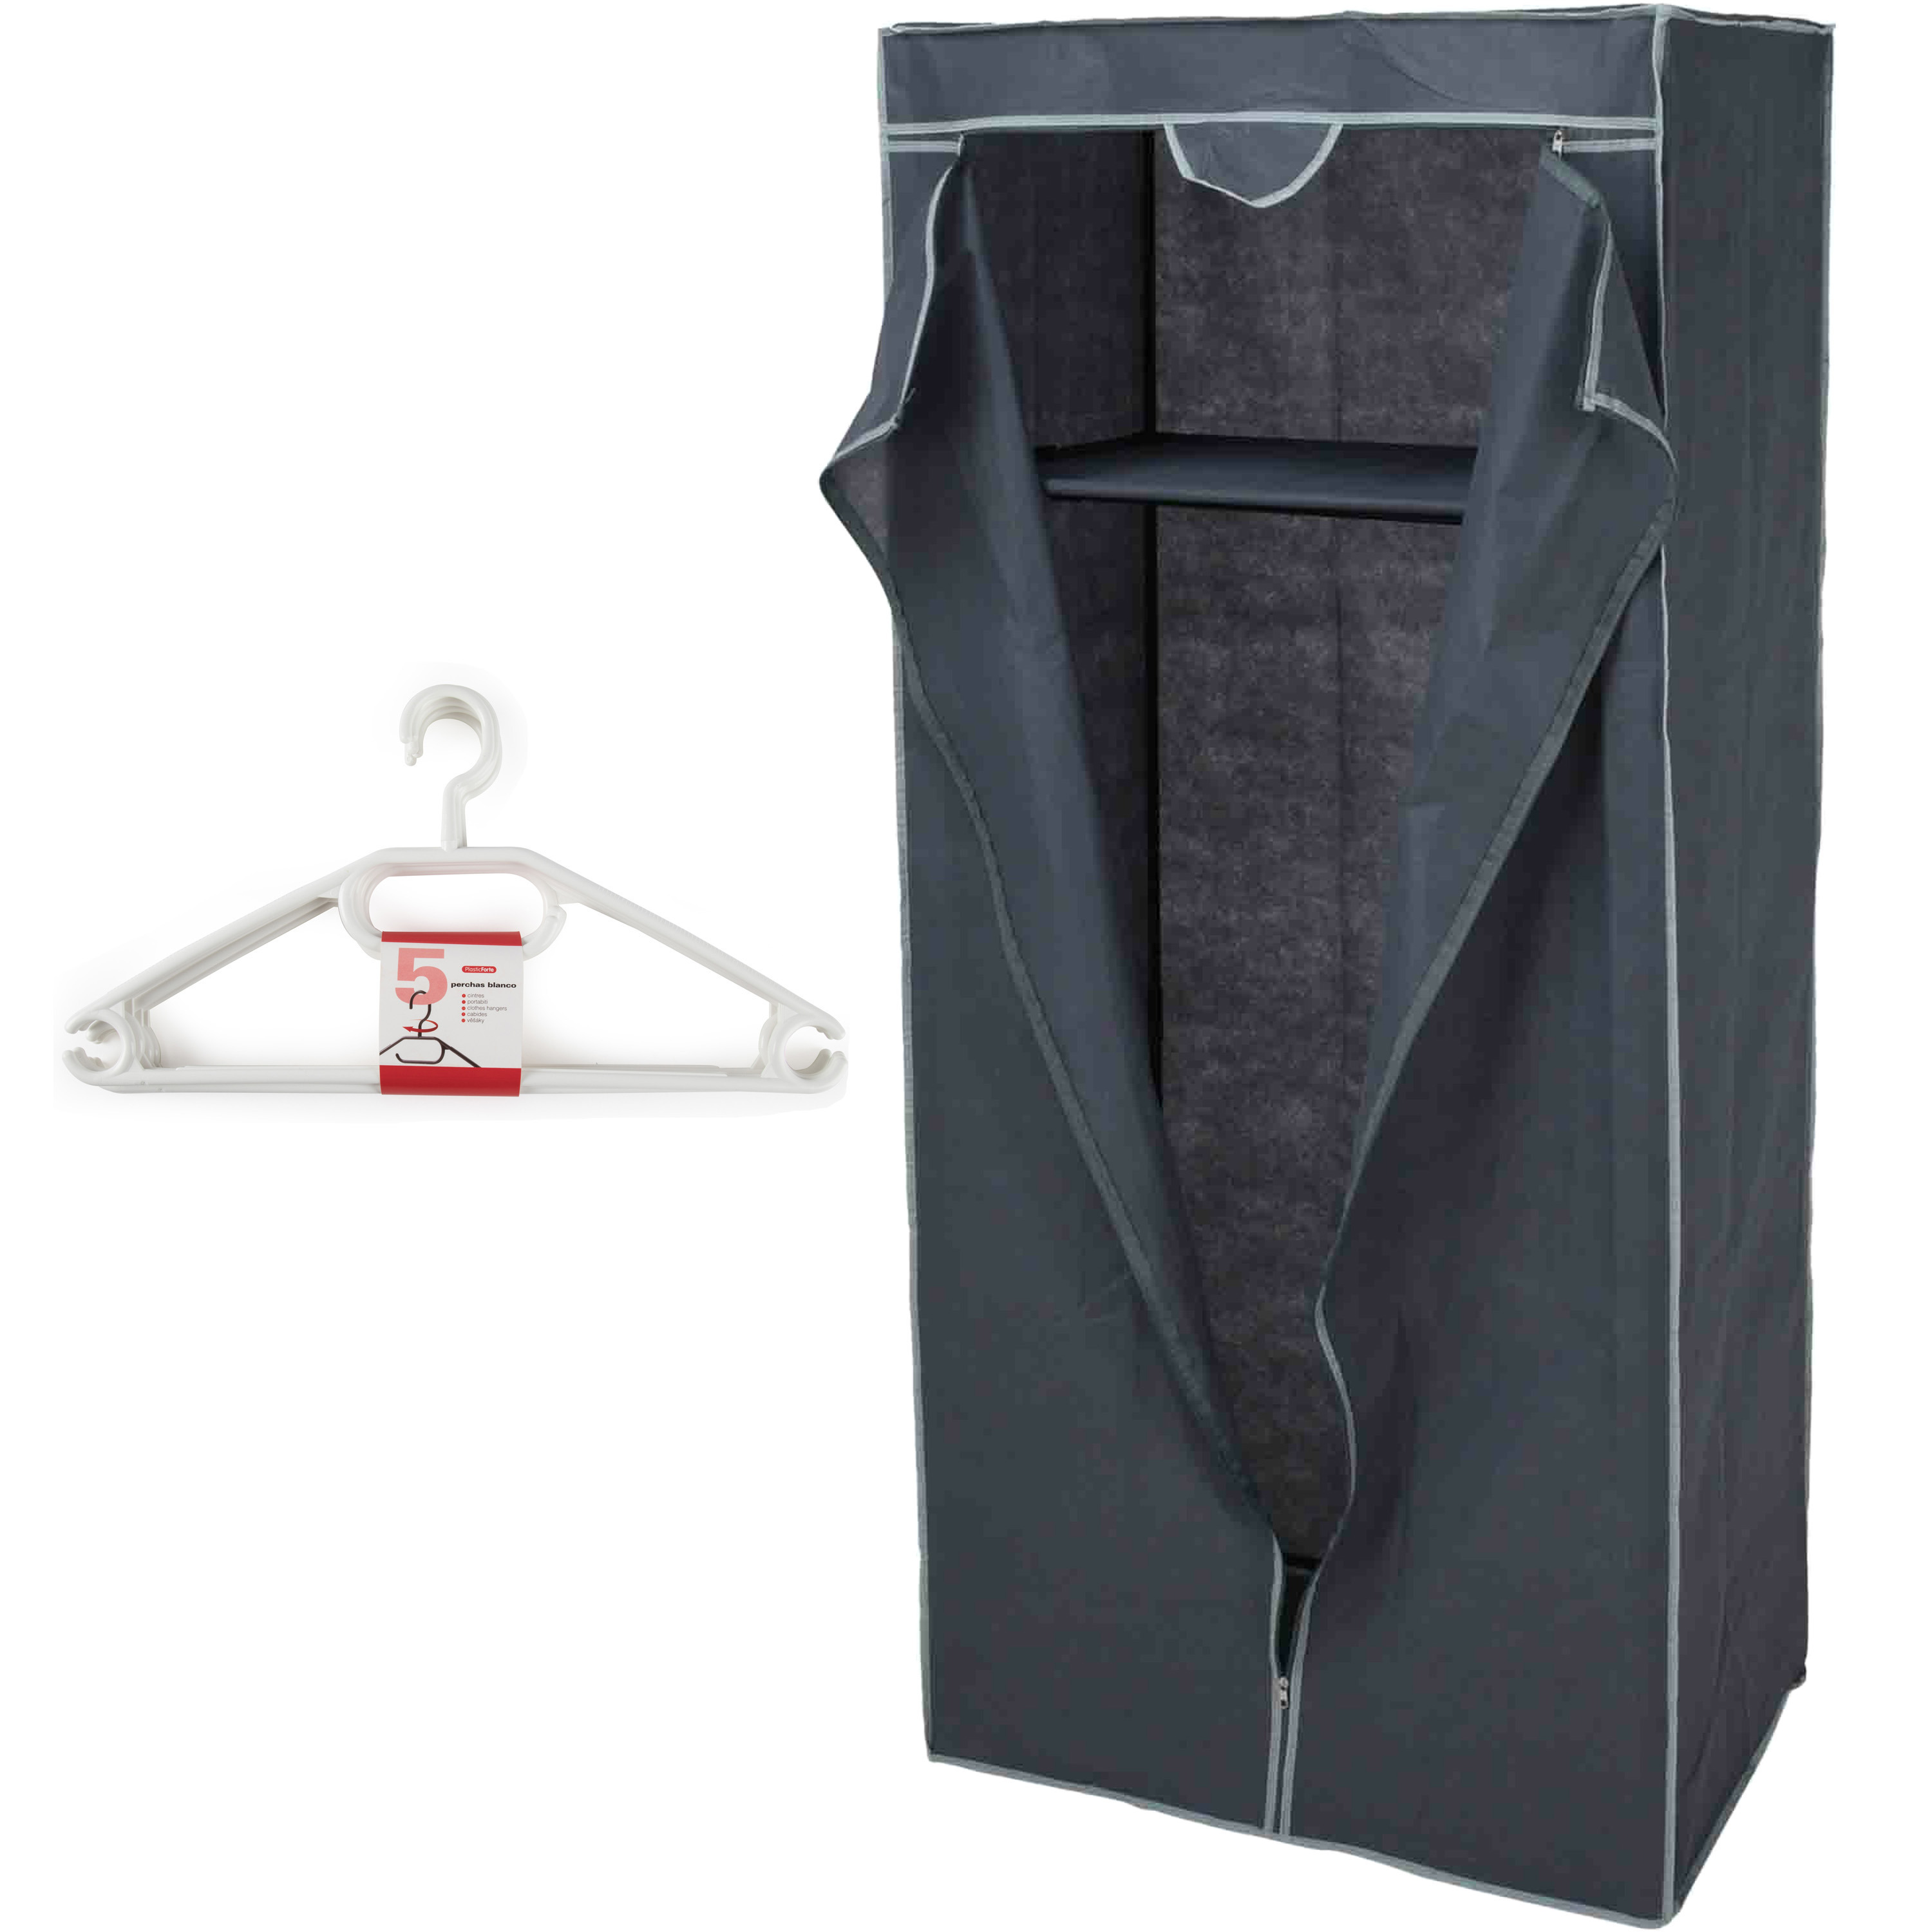 Mobiele opvouwbare kledingkast grijs 75 x 160 cm met 10x kledinghangers wit